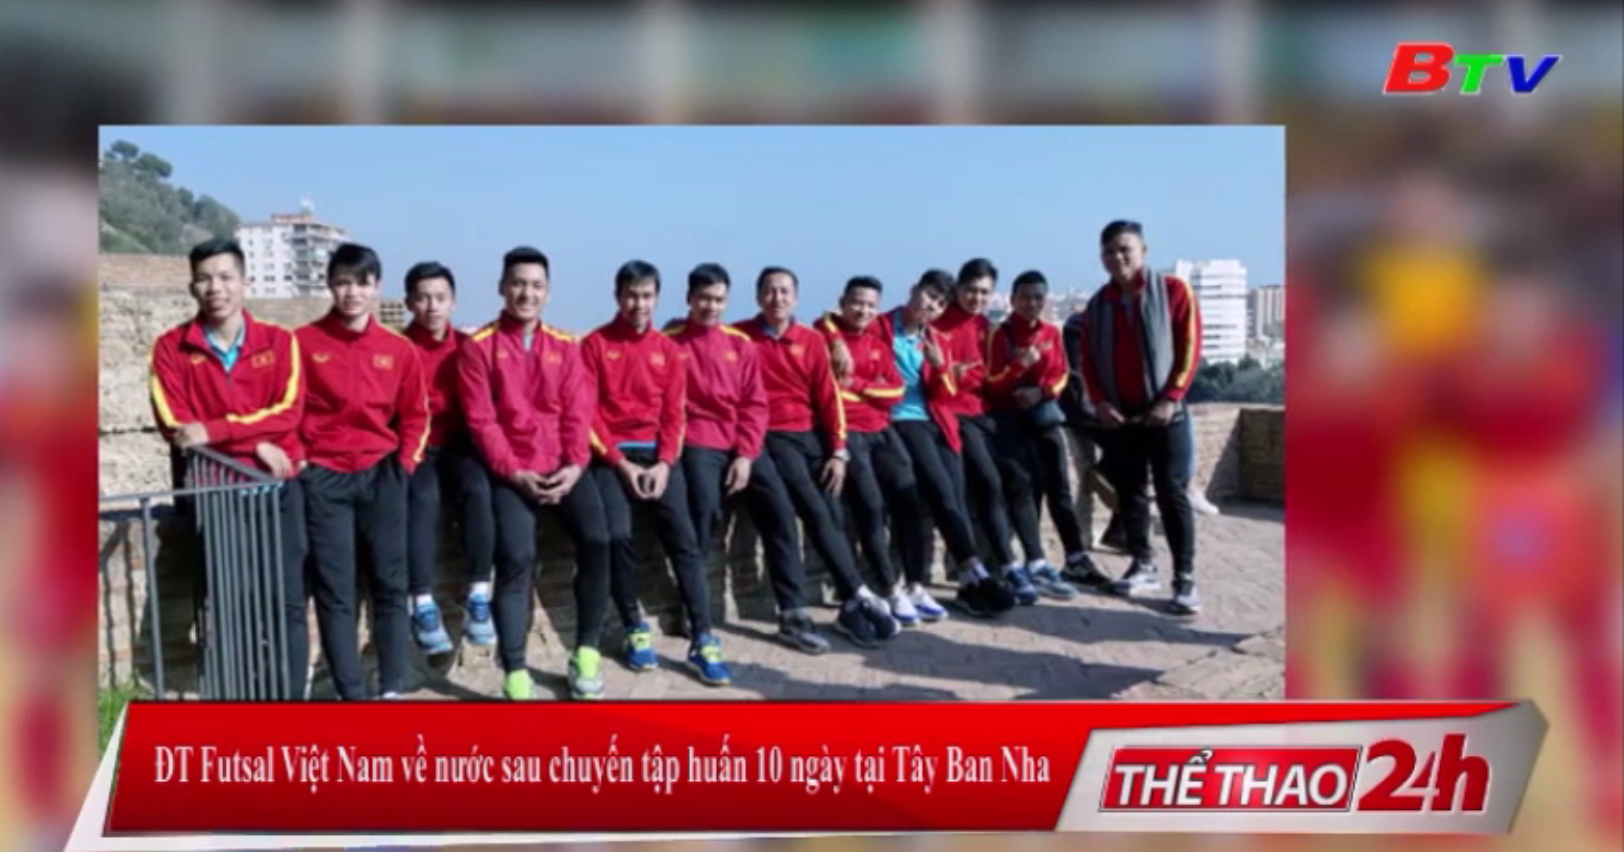 ĐT Futsal Việt Nam về nước sau chuyến tập huấn 